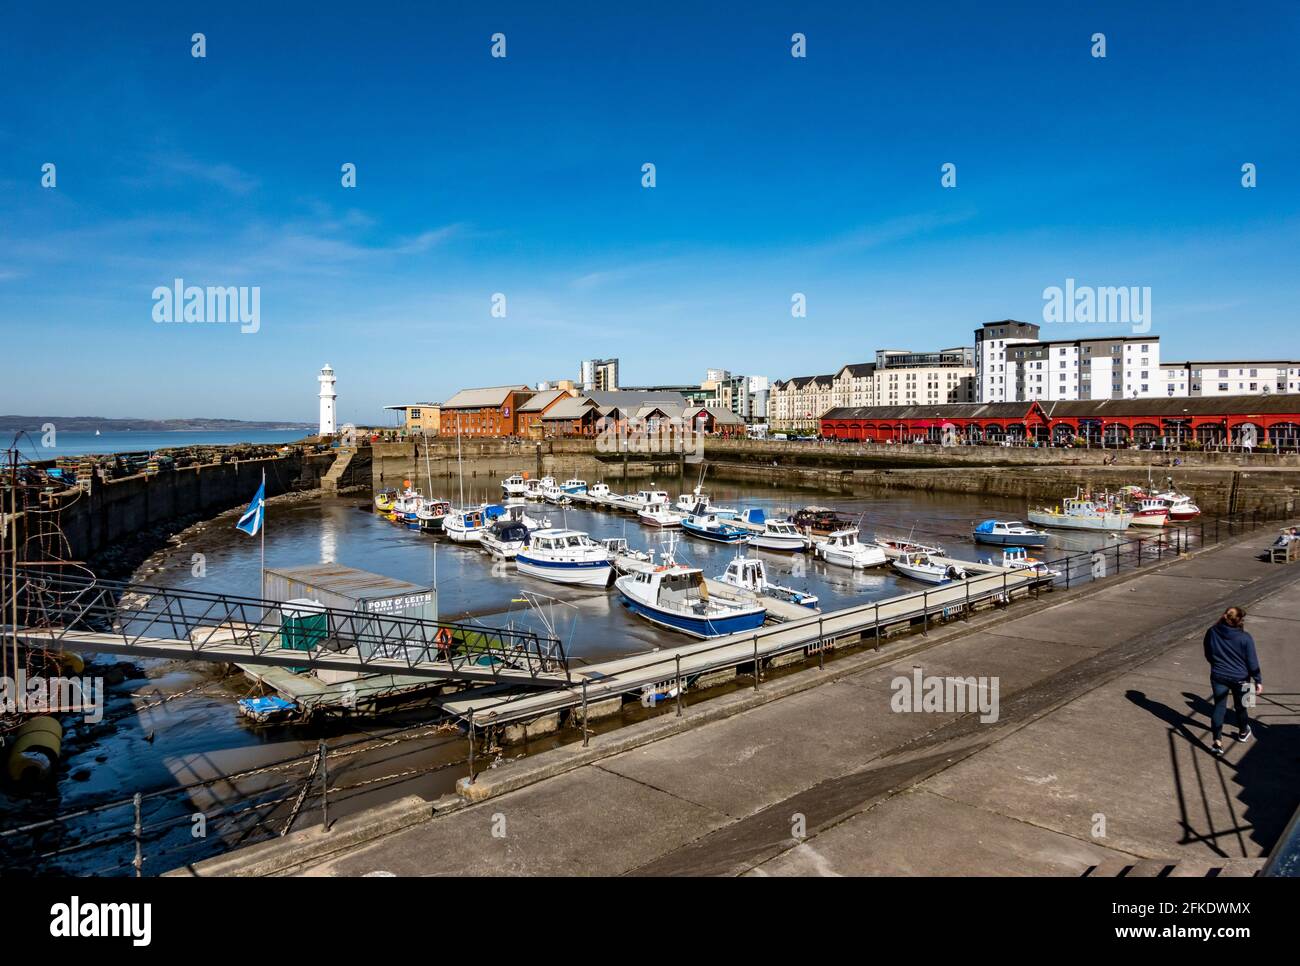 Newhaven Habour, all'estremità ovest del porto occidentale, Leith Docks Edimburgo, Scozia, con faro all'ingresso del porto e barche ormeggiate con bassa marea Foto Stock